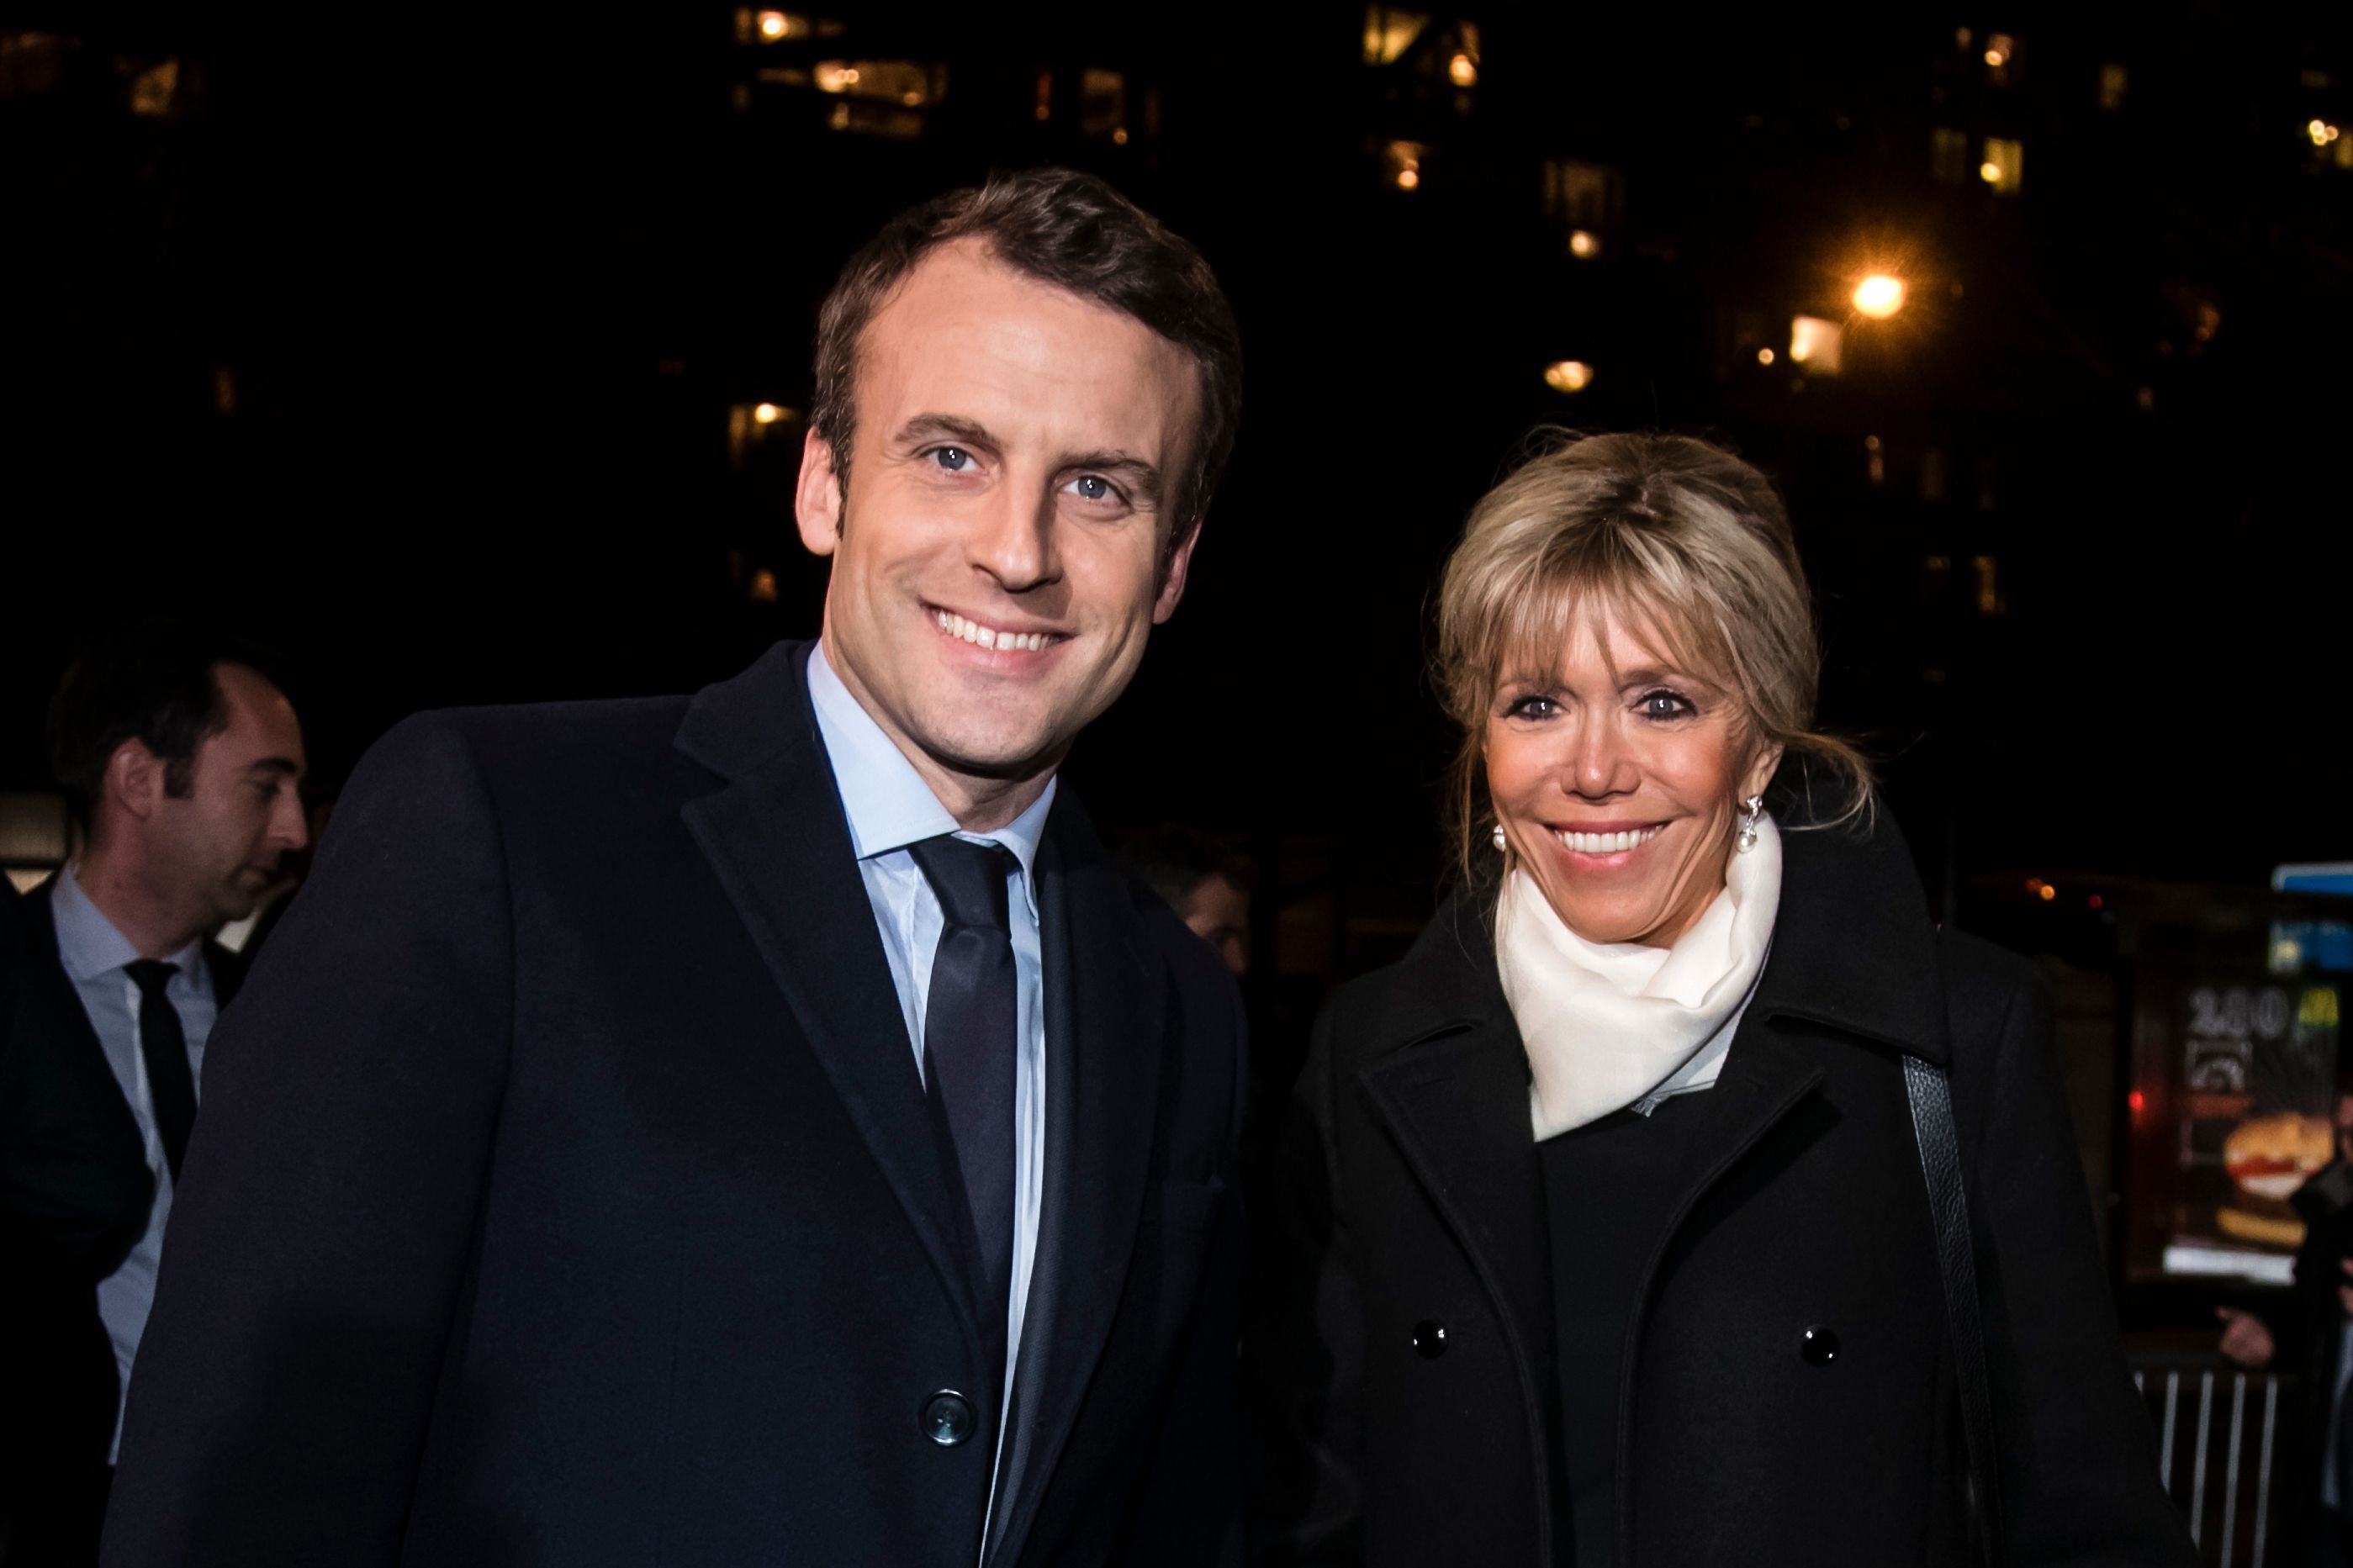 Emmanuel Macron et son épouse Brigitte Trogneux assistent au traditionnel dîner du Crif, le conseil représentatif des institutions juives de France à l'hôtel Pullman à Montparnasse le 22 février 2017 à Paris, France.  | Photo : Getty Images